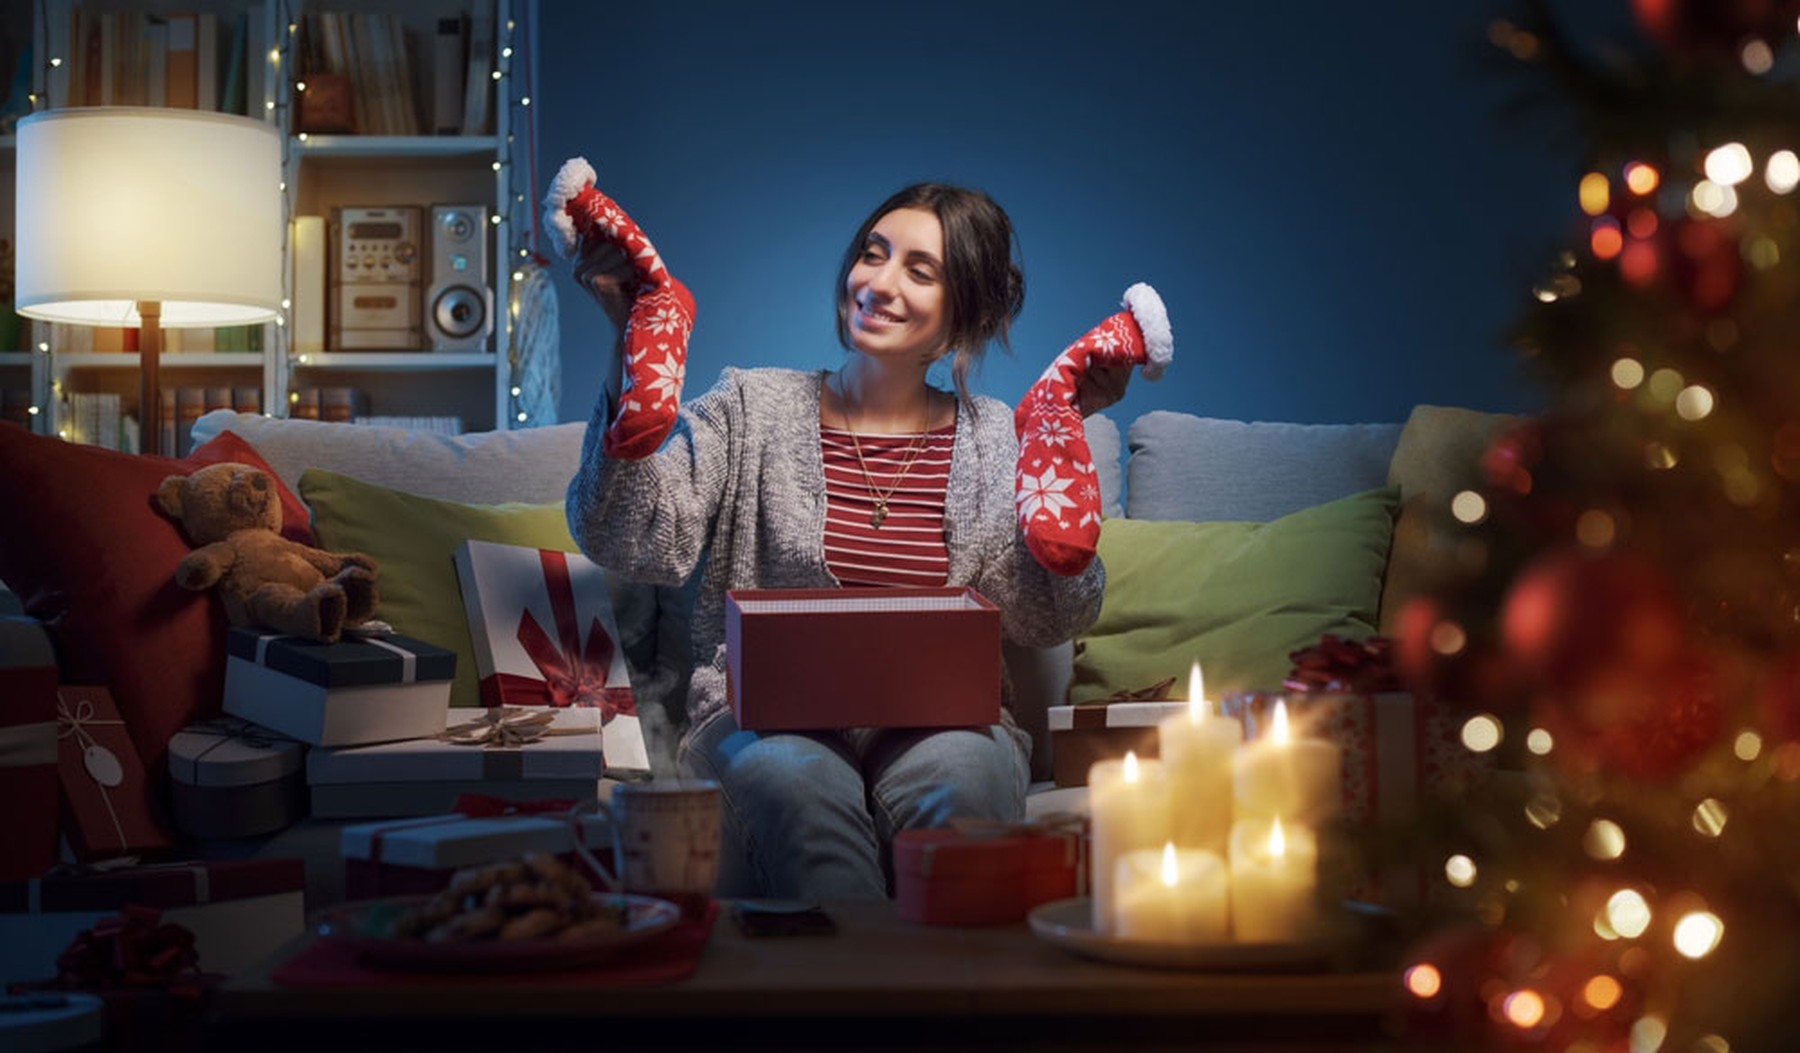 Mujer feliz sentada en el sofá de casa y abriendo regalos de Navidad, tiene en las manos unos calcetines rojos navideños.